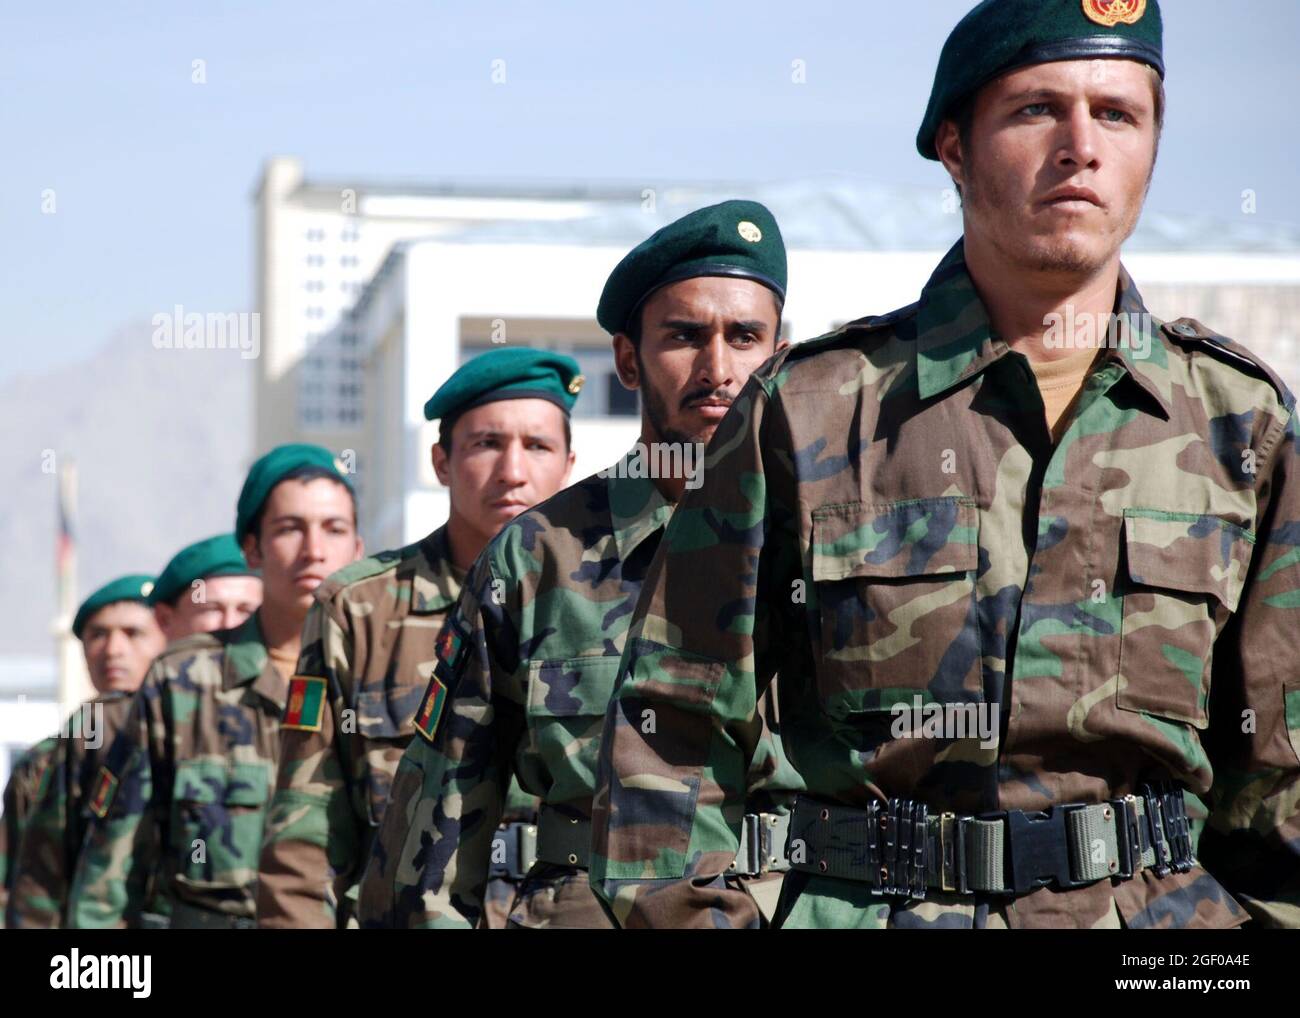 Kabul, Afghanistan – 828 soldati dell'esercito nazionale afghano marciano in formazione durante una cerimonia di laurea al Kabul Military Training Center (KMTC). I soldati afghani hanno completato la loro formazione di base e si schiereranno in tutto il paese a sostegno della difesa nazionale afghana. In un dato giorno 10,000 reclute sono addestrati presso KMTC e Stati Uniti e NATO membri di servizio e appaltatori fornire mentorship e formazione al KMTC. Foto del Dipartimento della Difesa degli Stati Uniti di Lt. CDR. John Gay Foto Stock